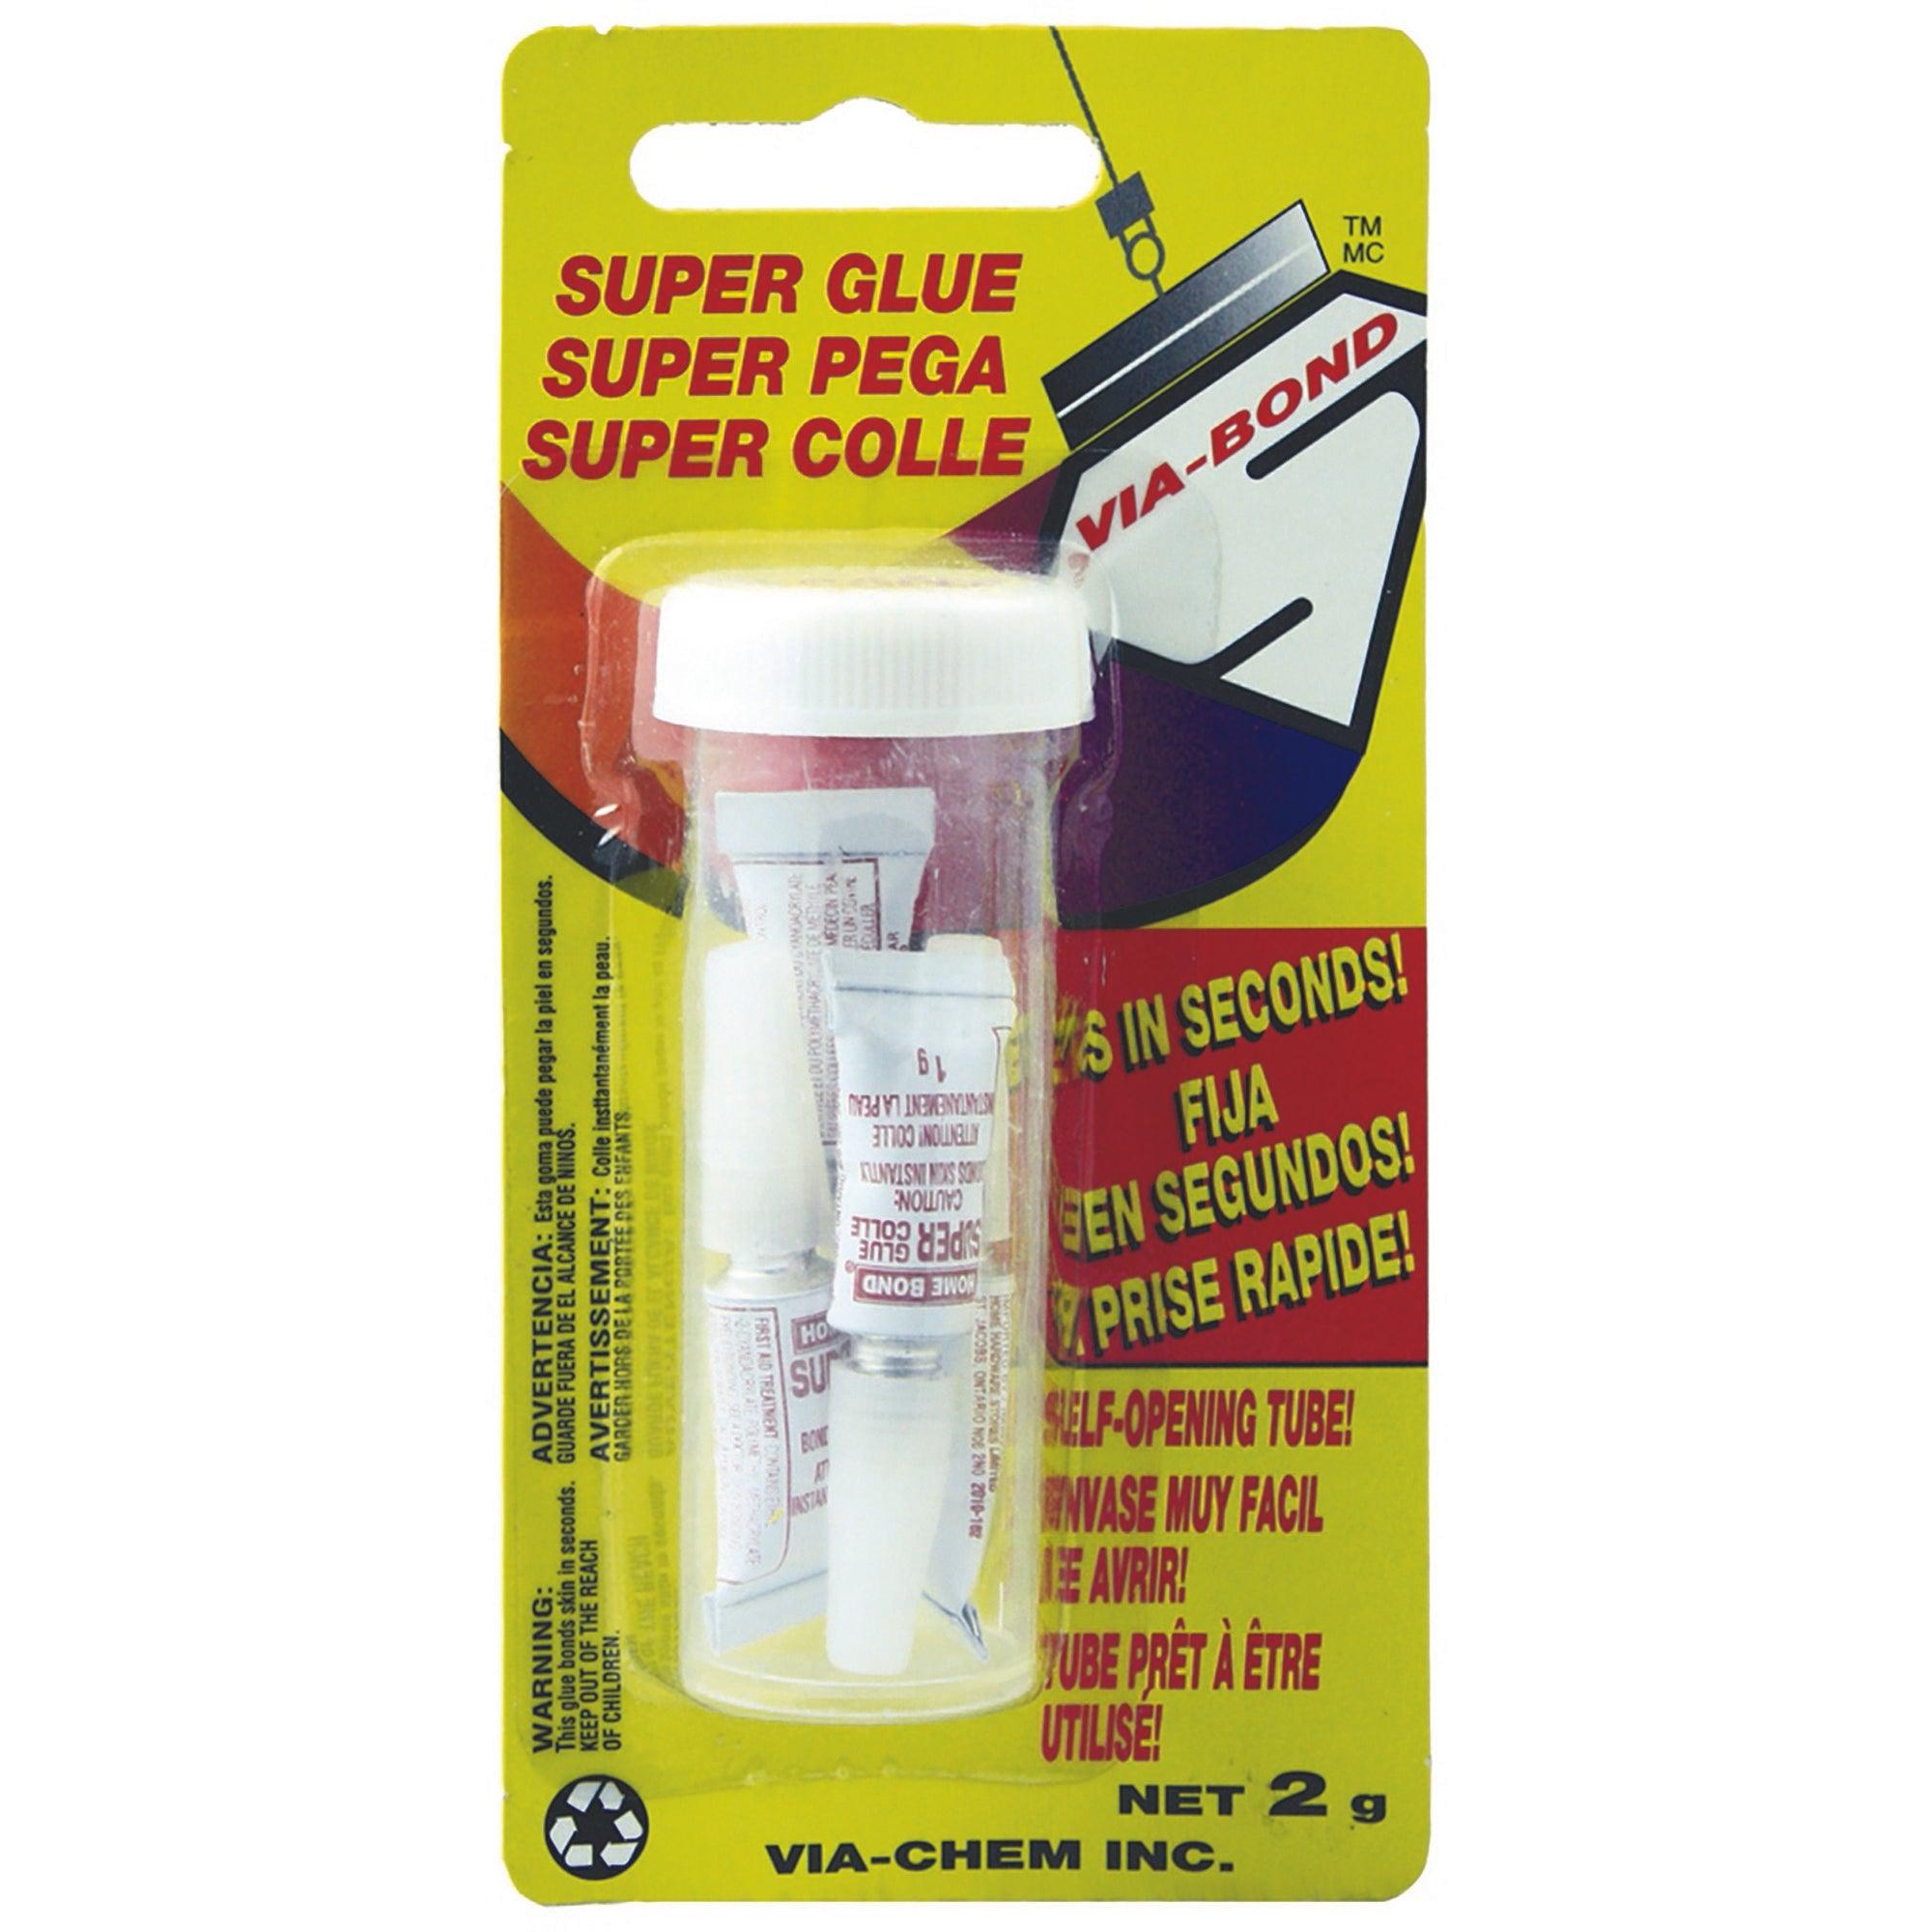 Super Glue 4 Pack - Dollar Max Dépôt